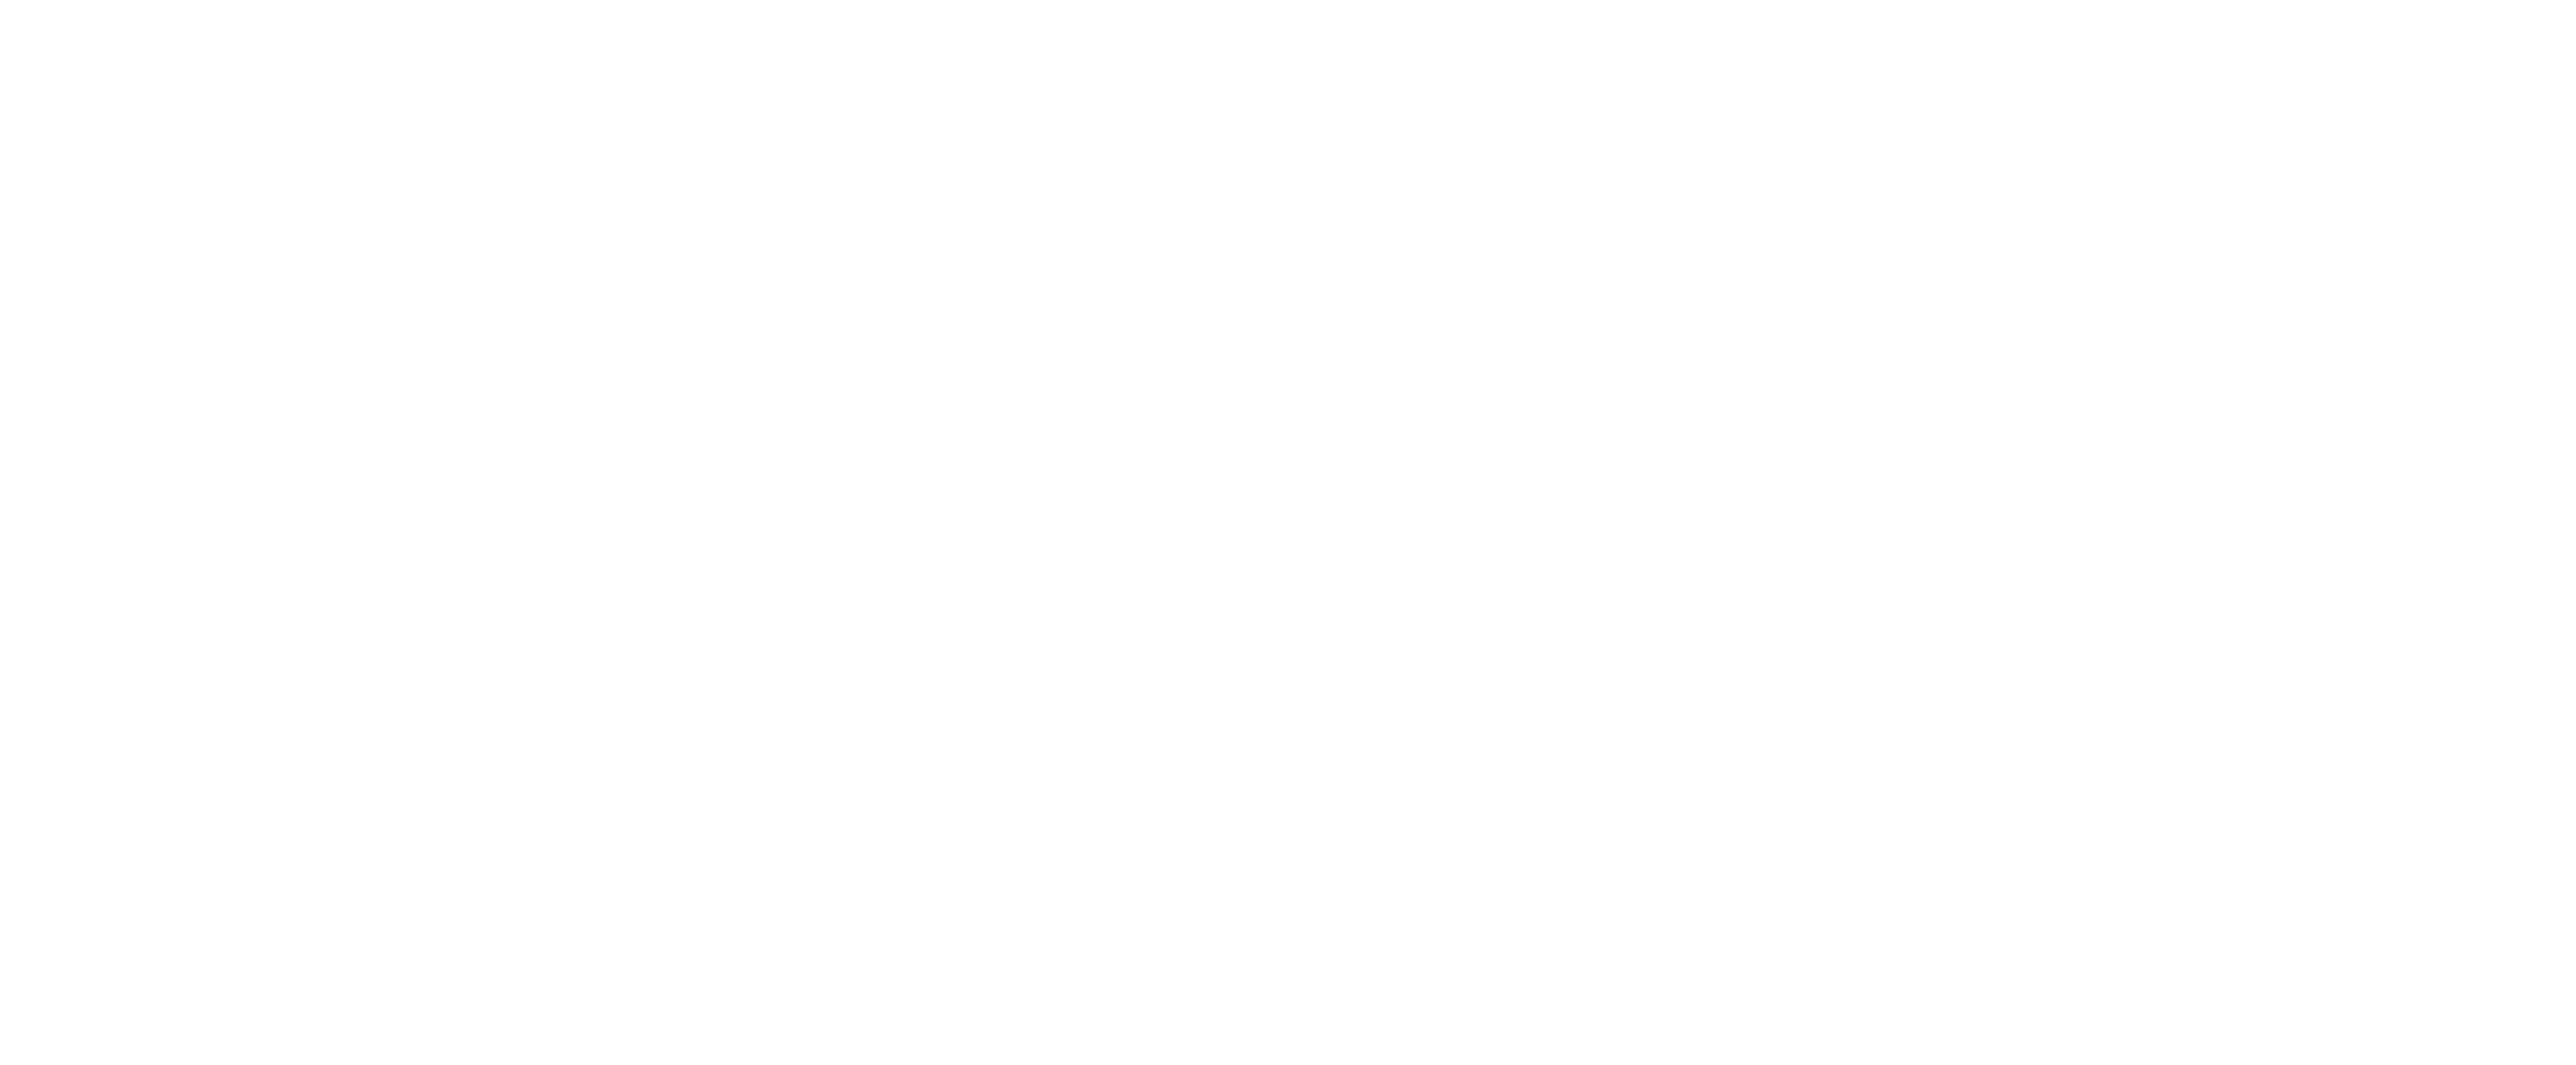 Kooimolen bed and breakfast